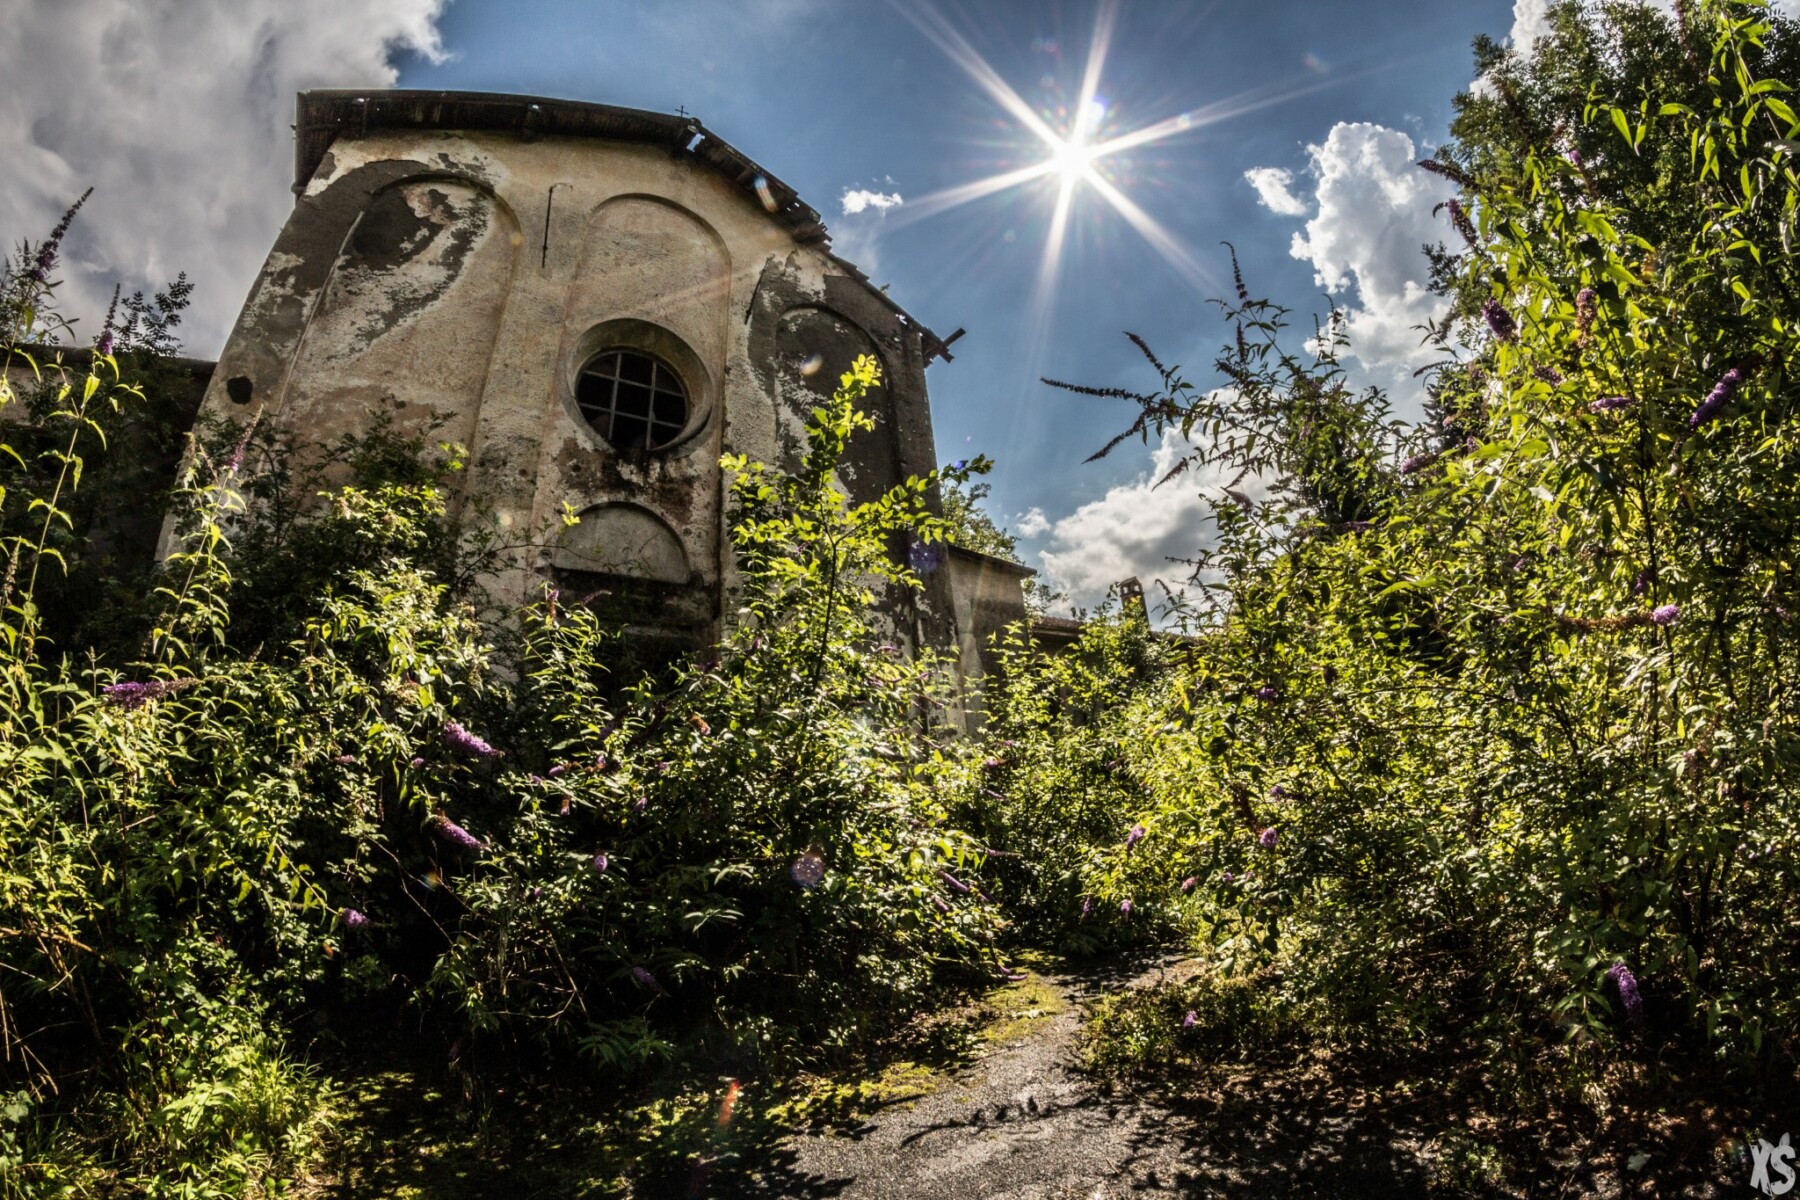 Collège abandonné dans le nord-ouest de l'Italie.